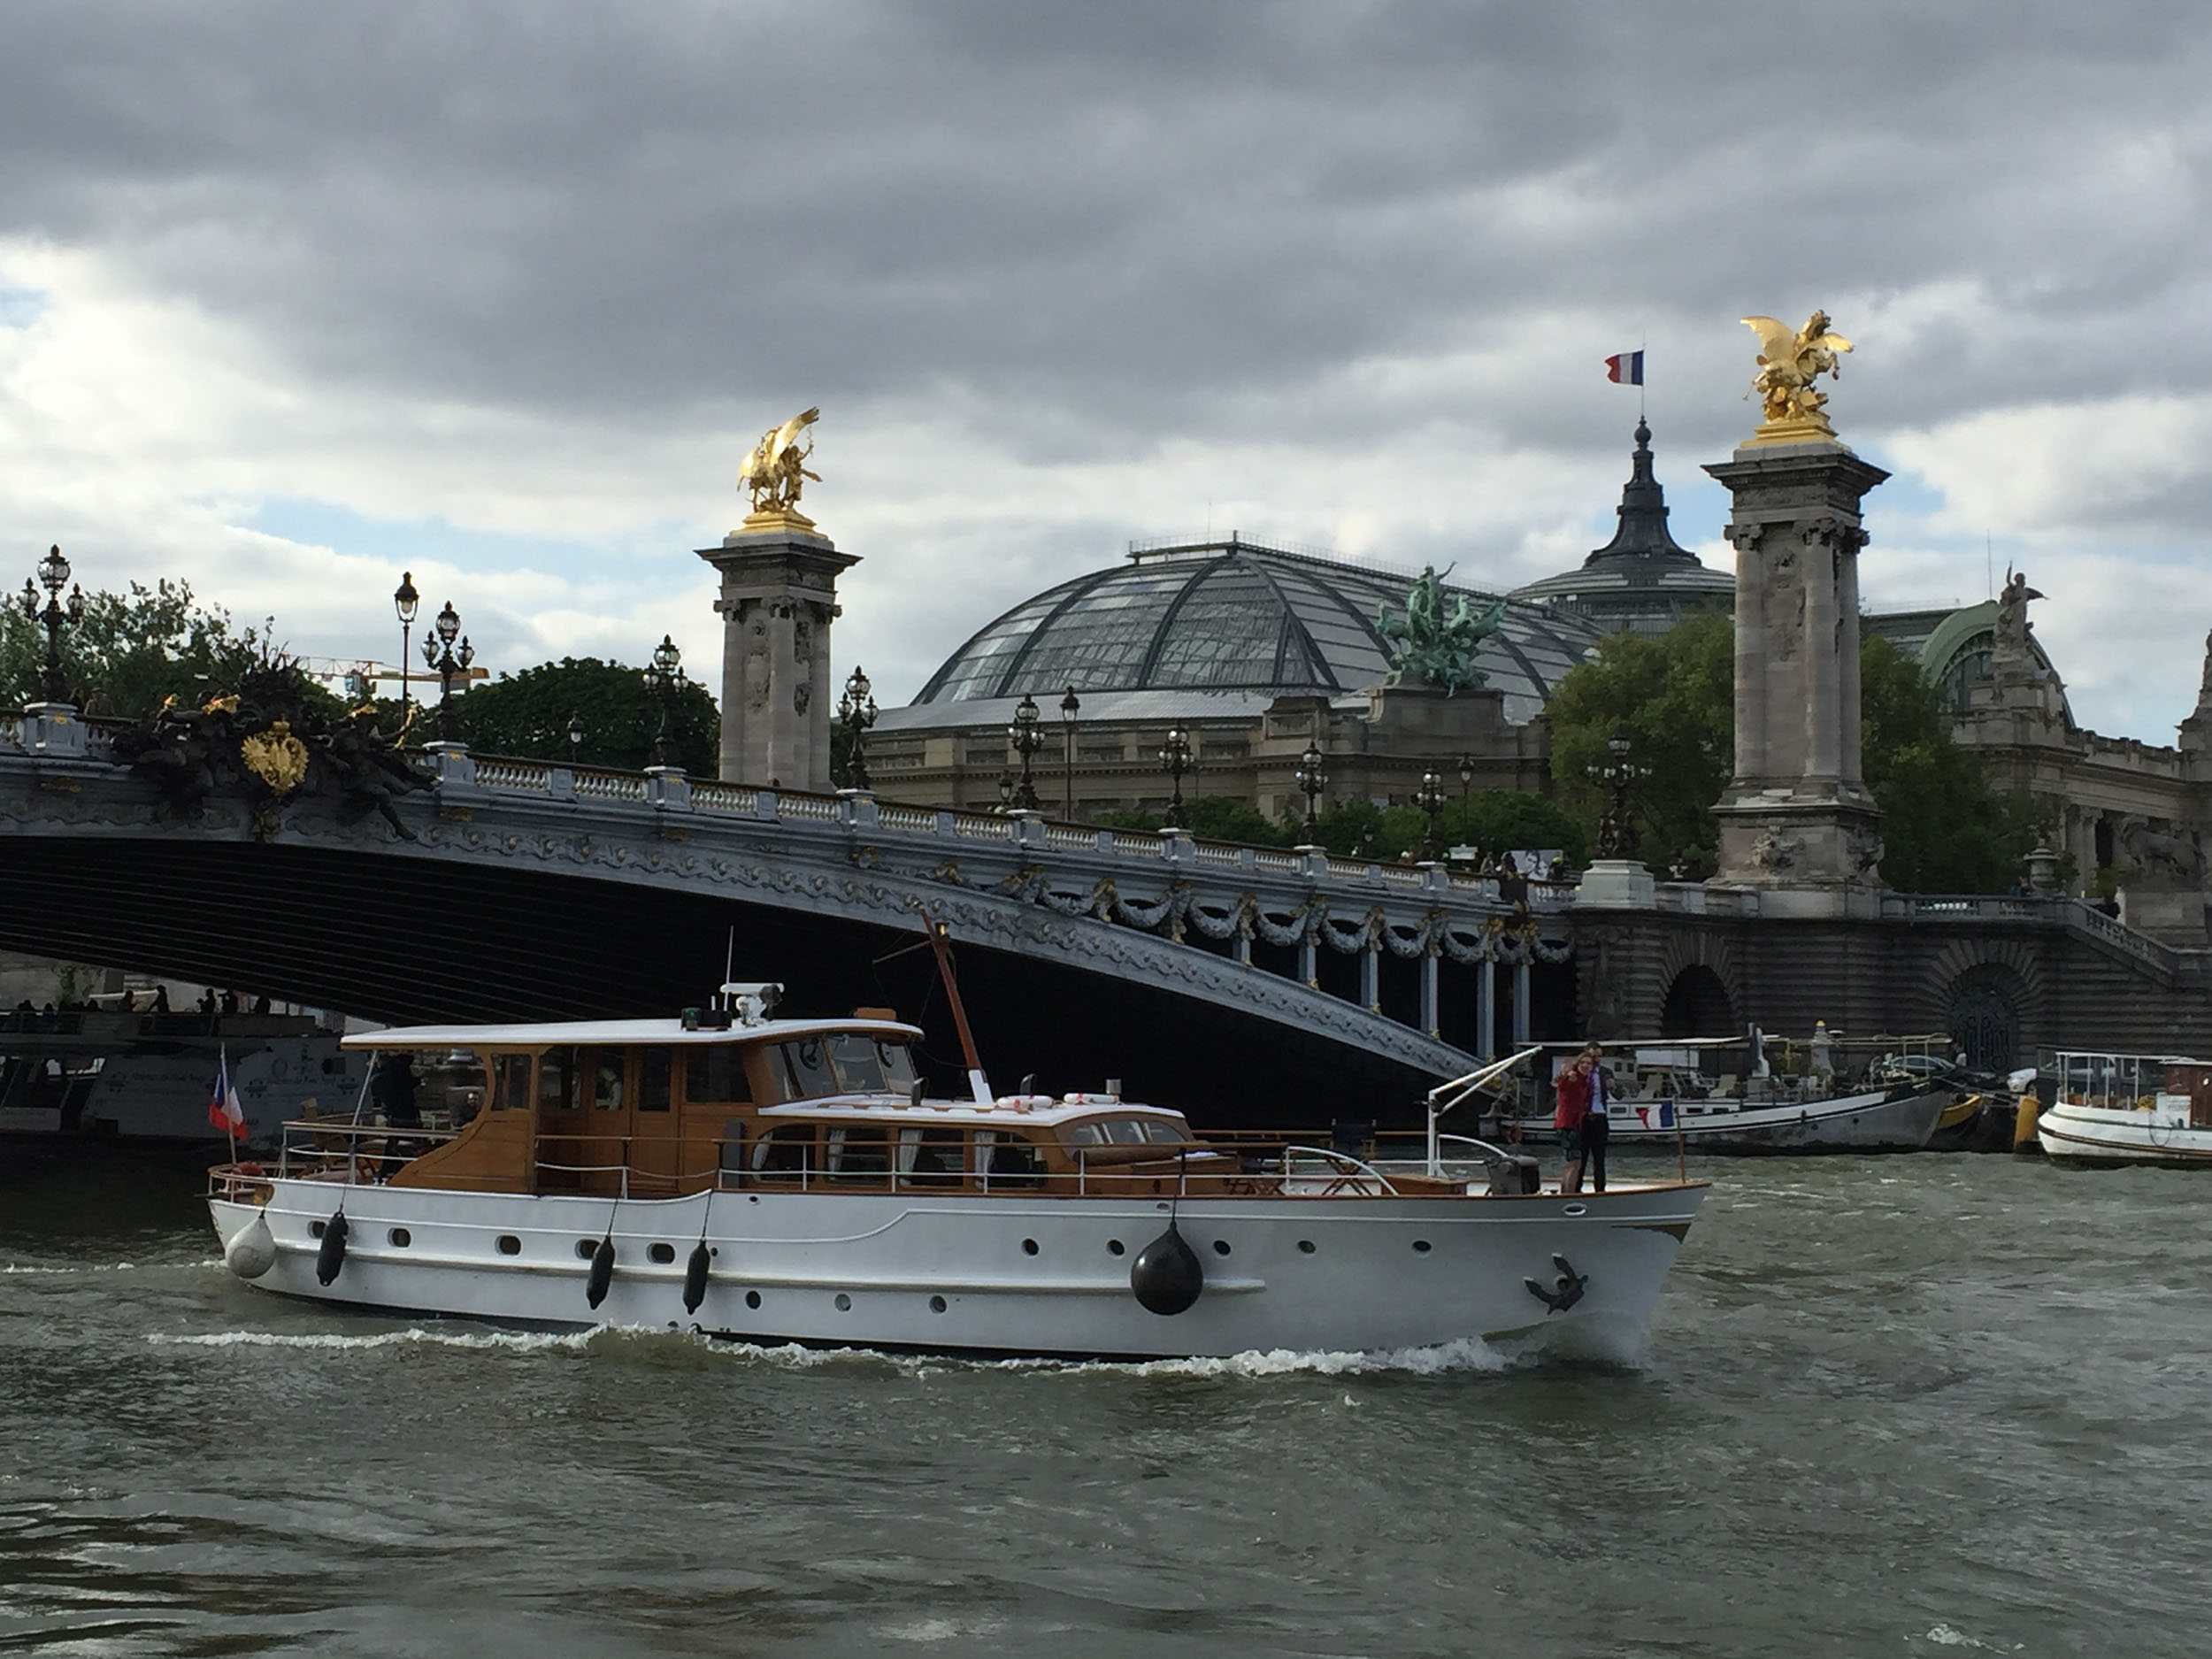 Dutch Motor Yacht, magnifique yacht sur la Seine à Paris